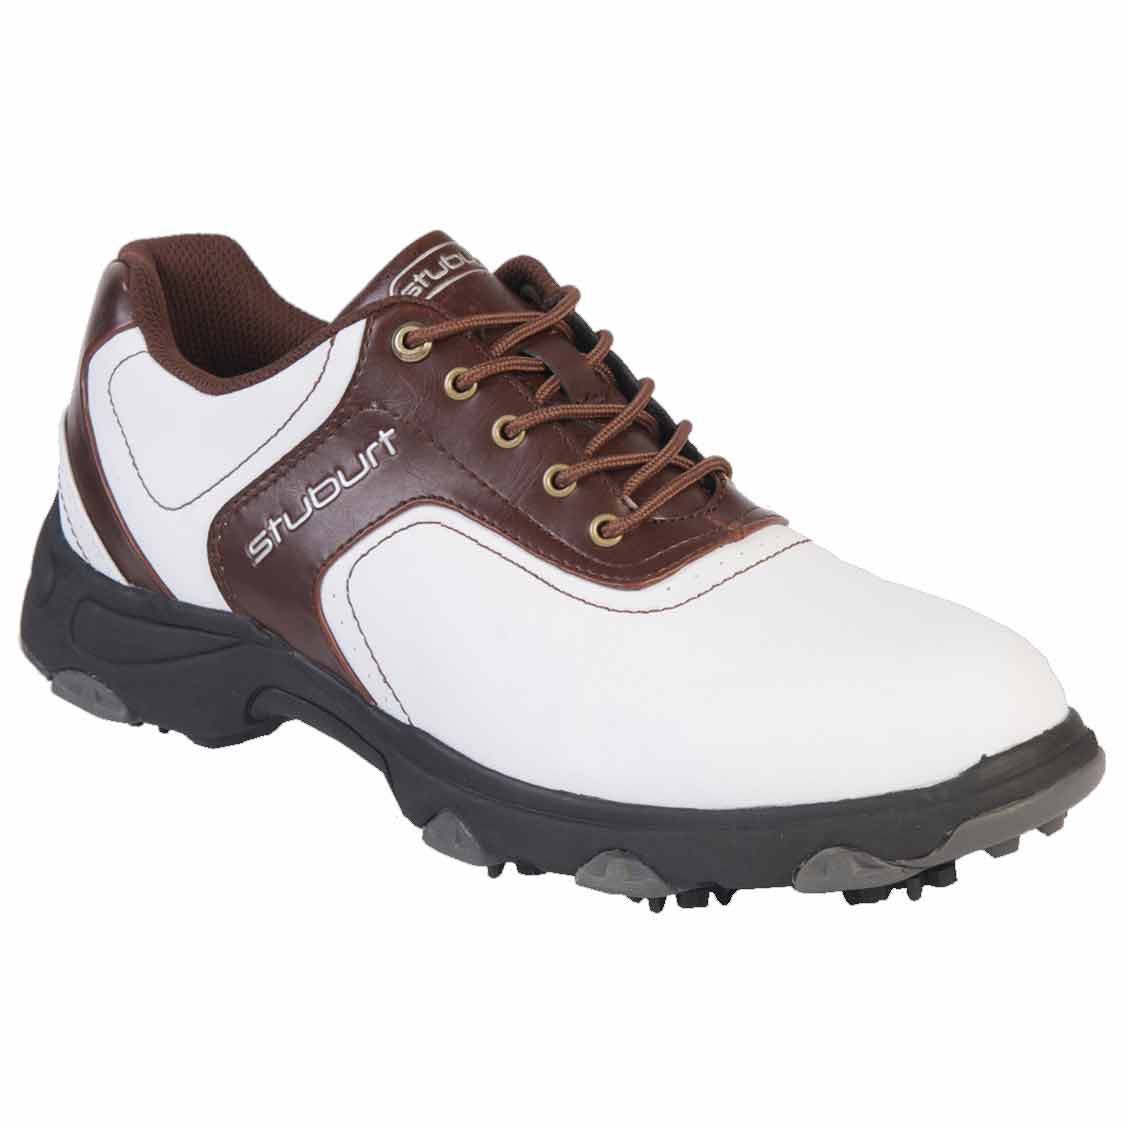 Comfort XP Golf Shoes Mens -